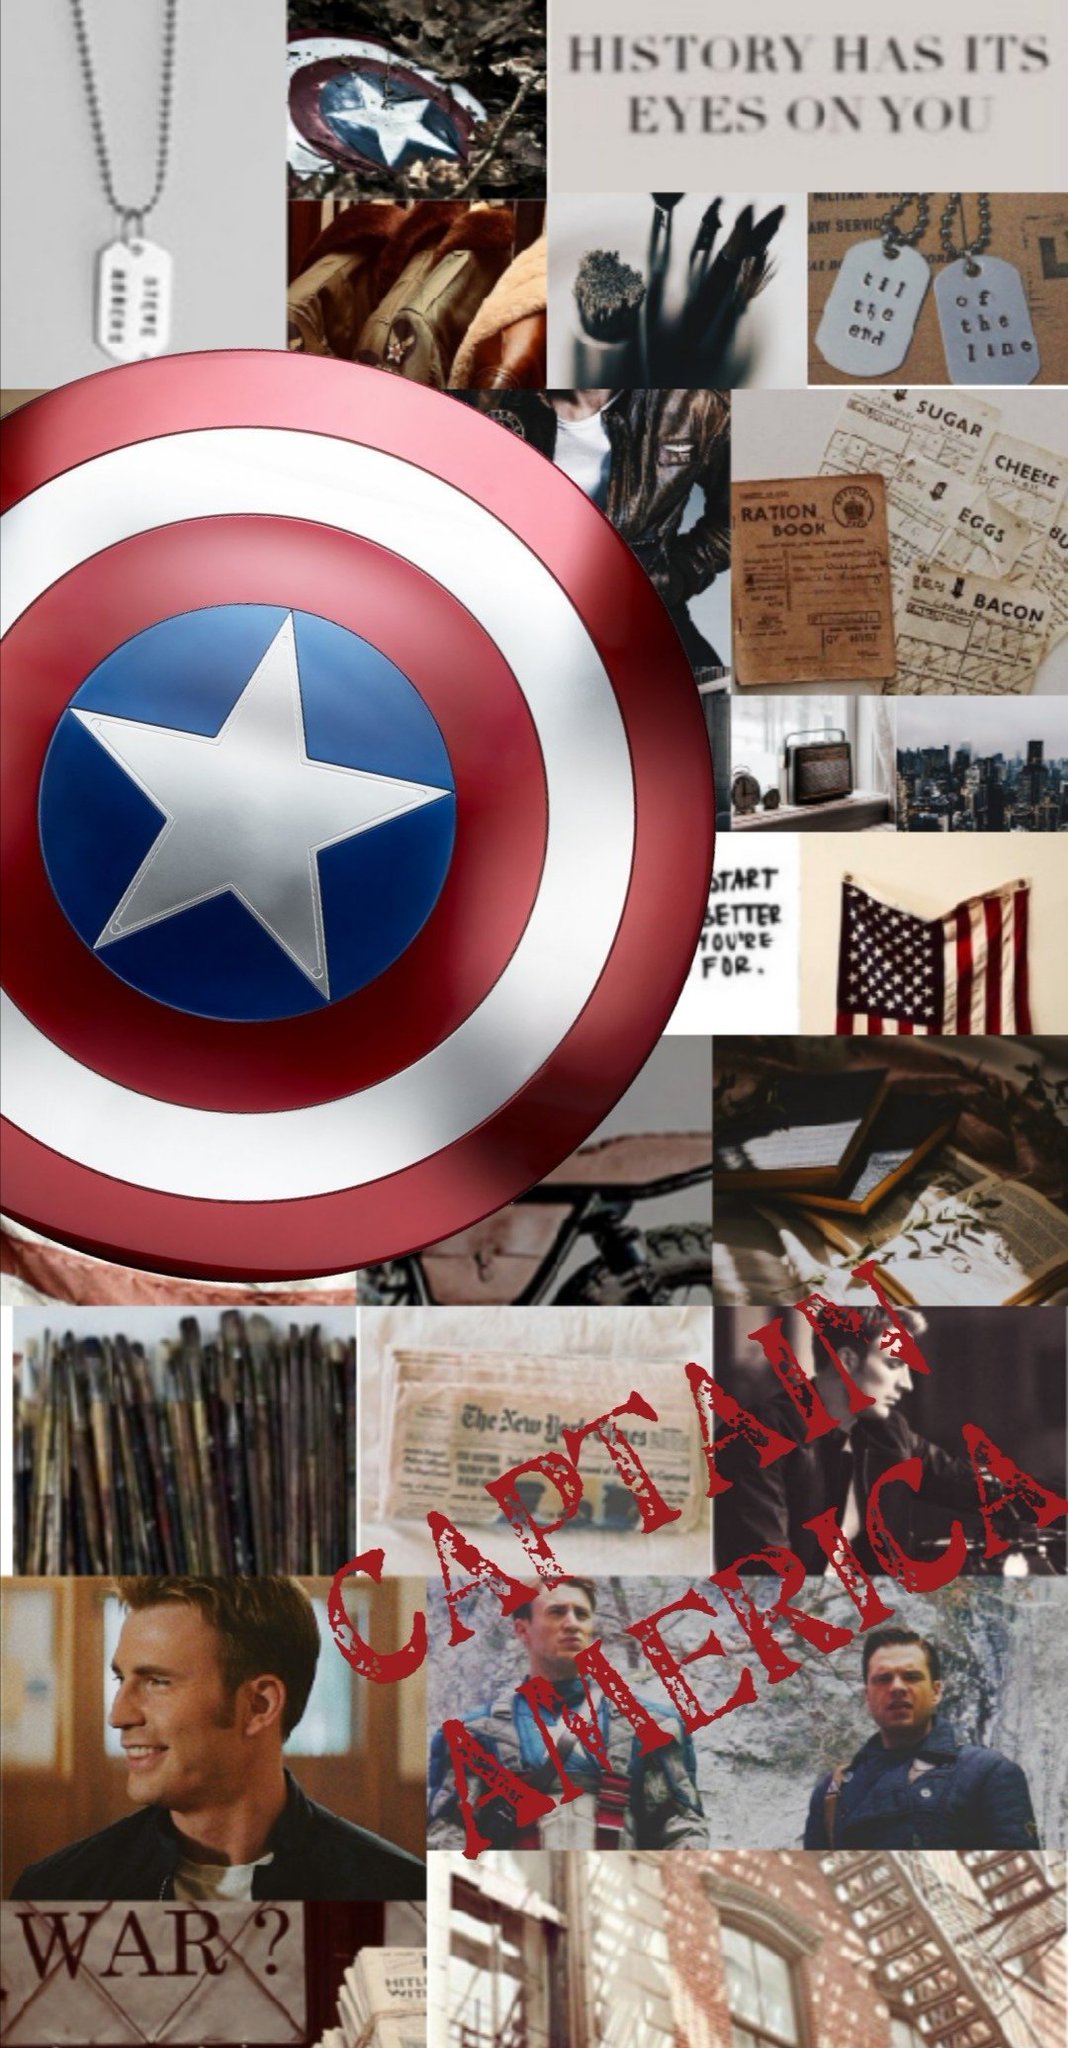 Emily på Twitter: Captain America and black panther wallpaper!! #MarvelStudios #Marvel #Fanarts #moodboard #Avengers #Wallpaper # captainamerica #BlackPanther #BlackLivesMatter